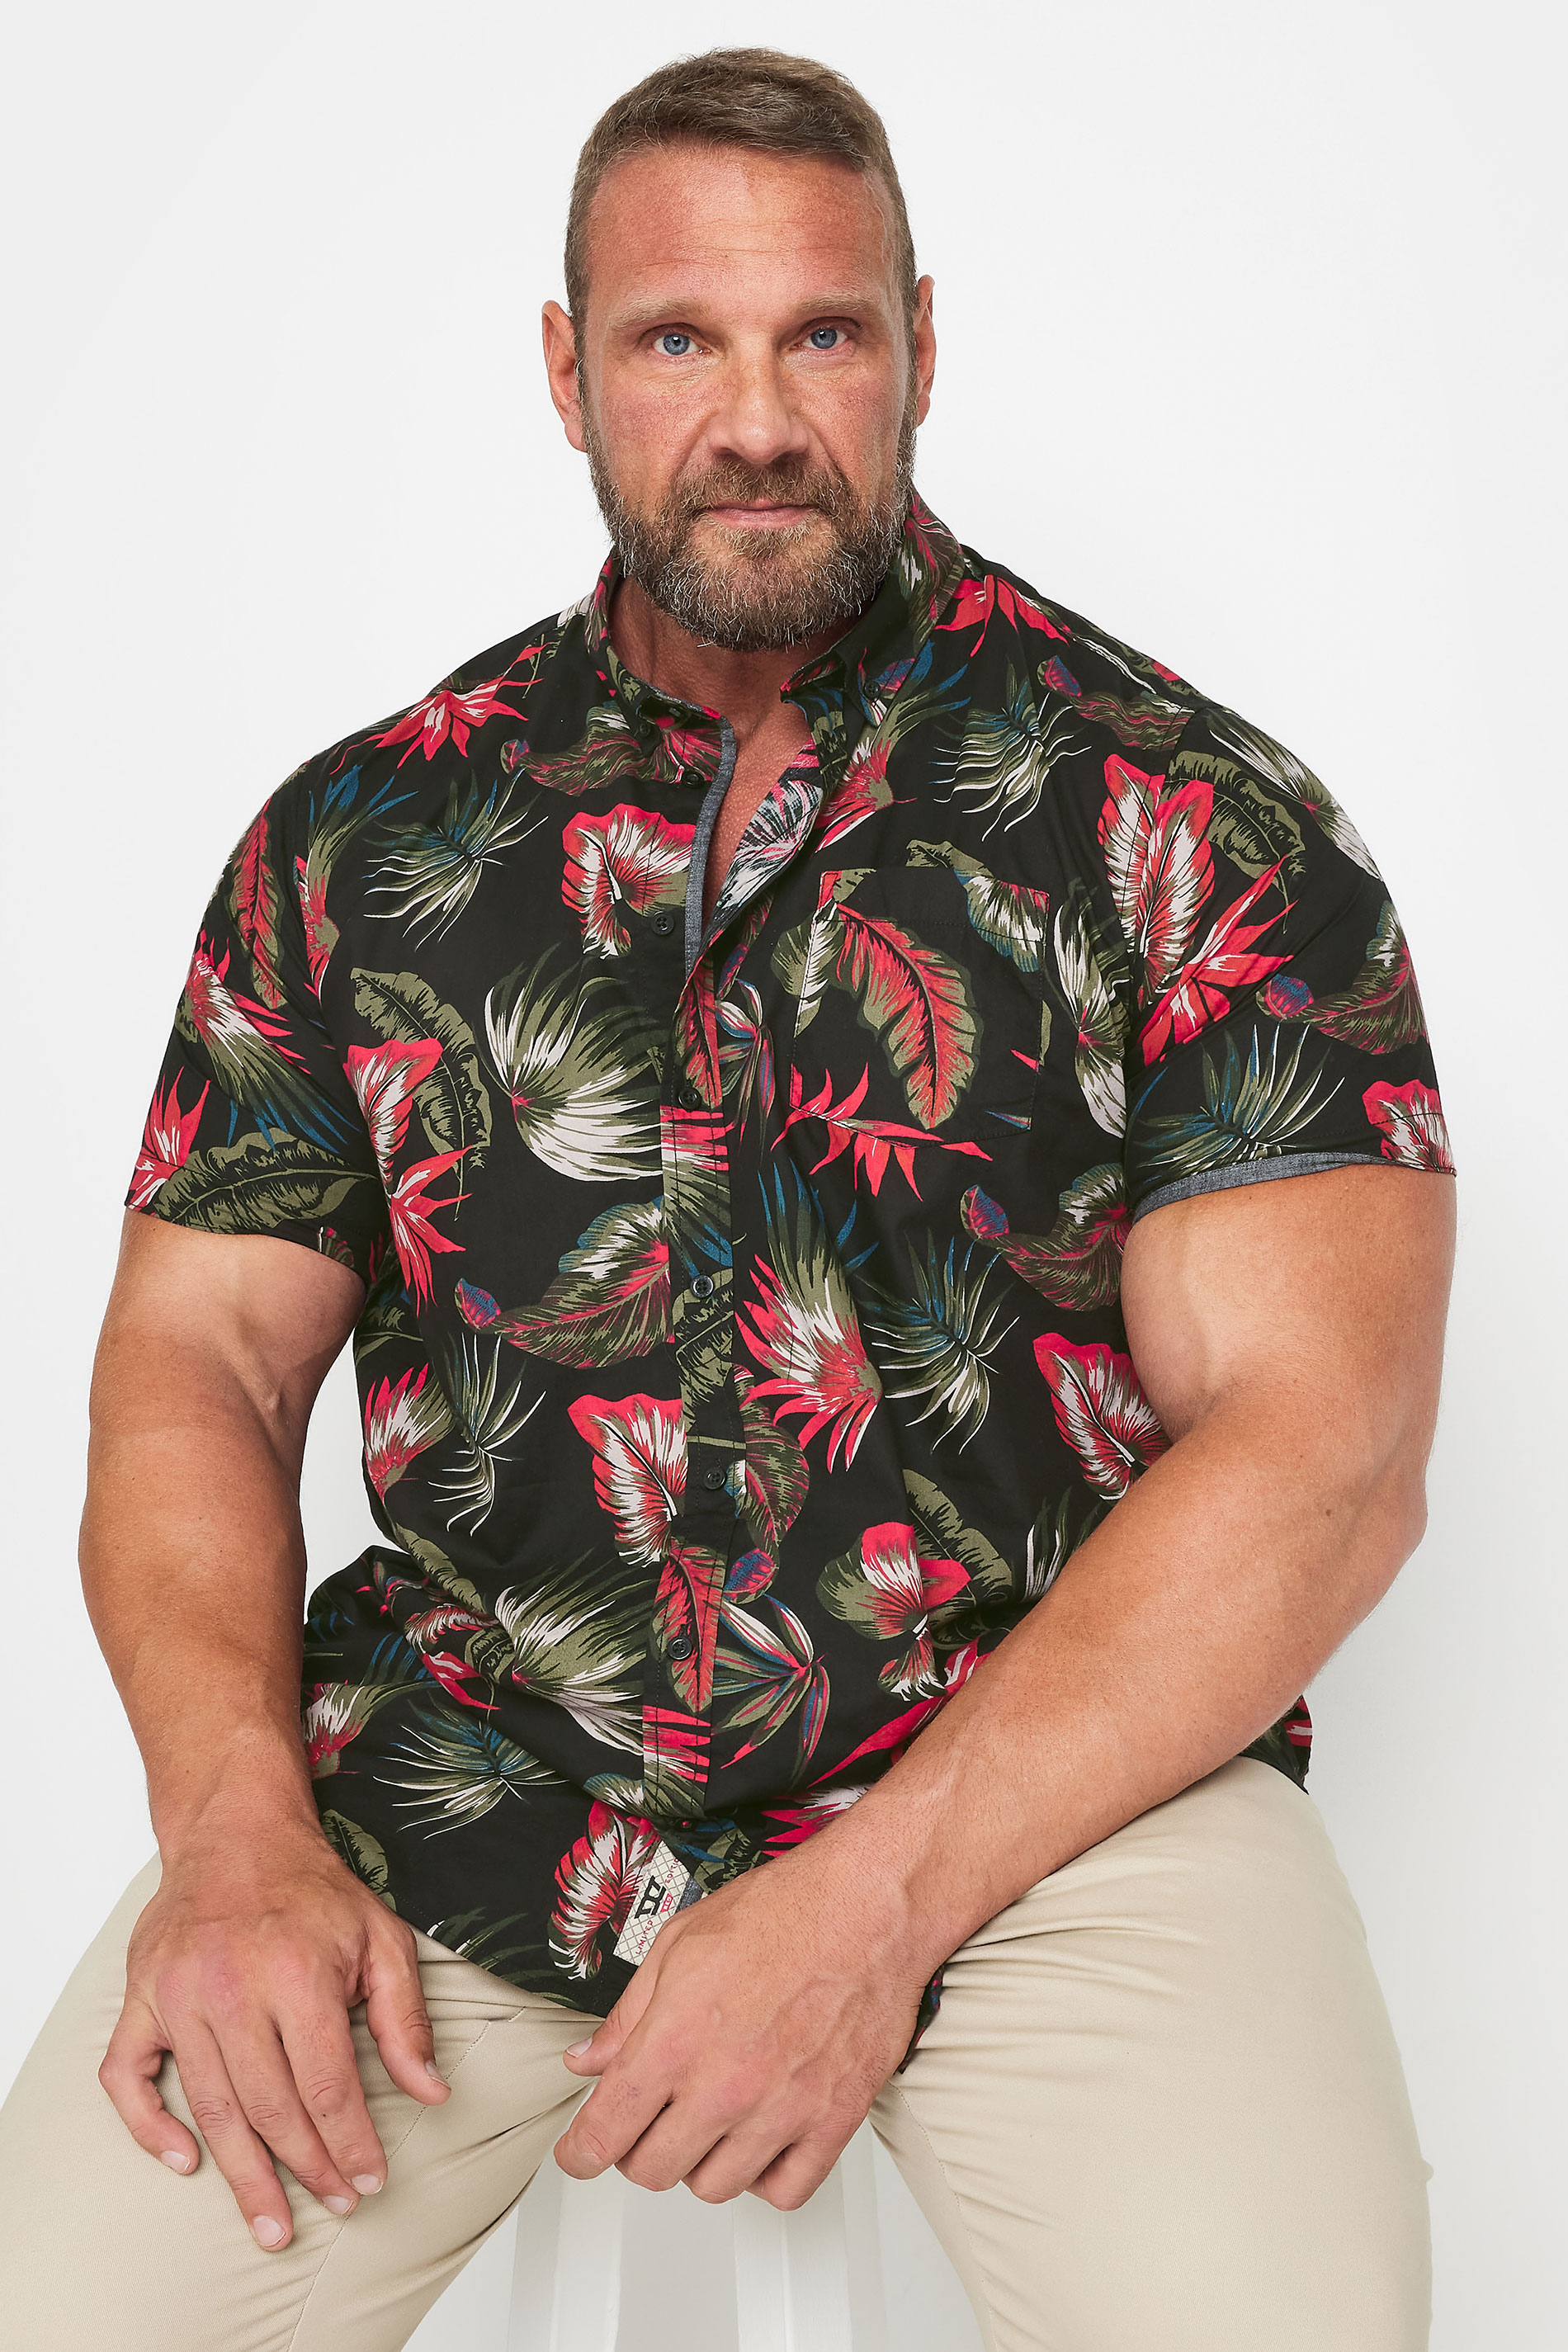 D555 Big & Tall Black Hawaiian Print Short Sleeve Shirt | BadRhino 1